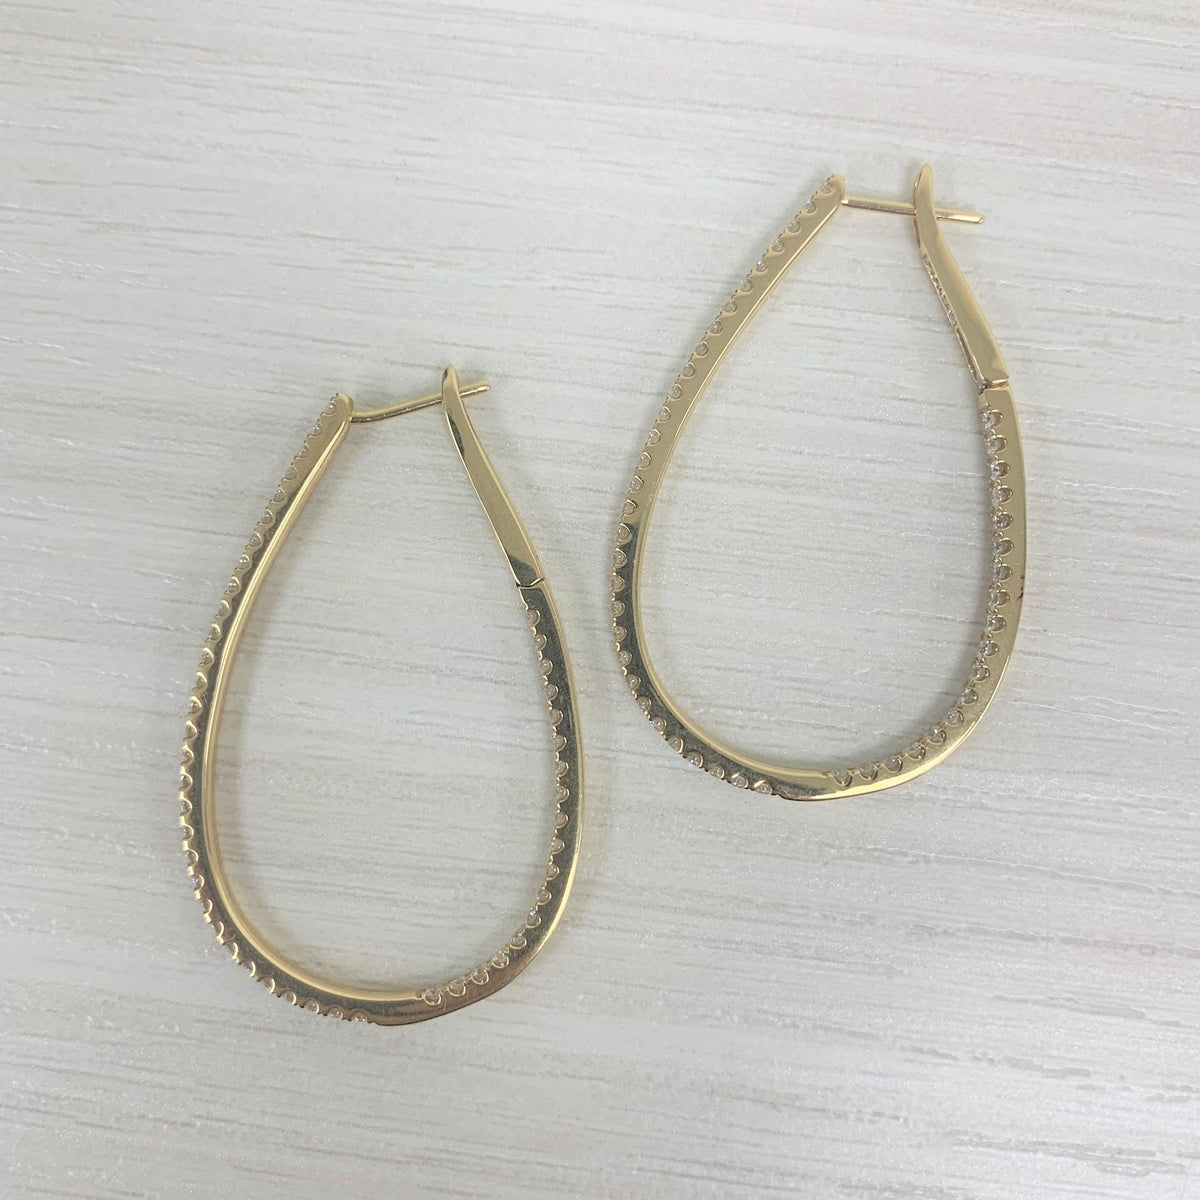 Inside Out Diamond Hoop Earrings in 14K Yellow Gold 1.60 ctw